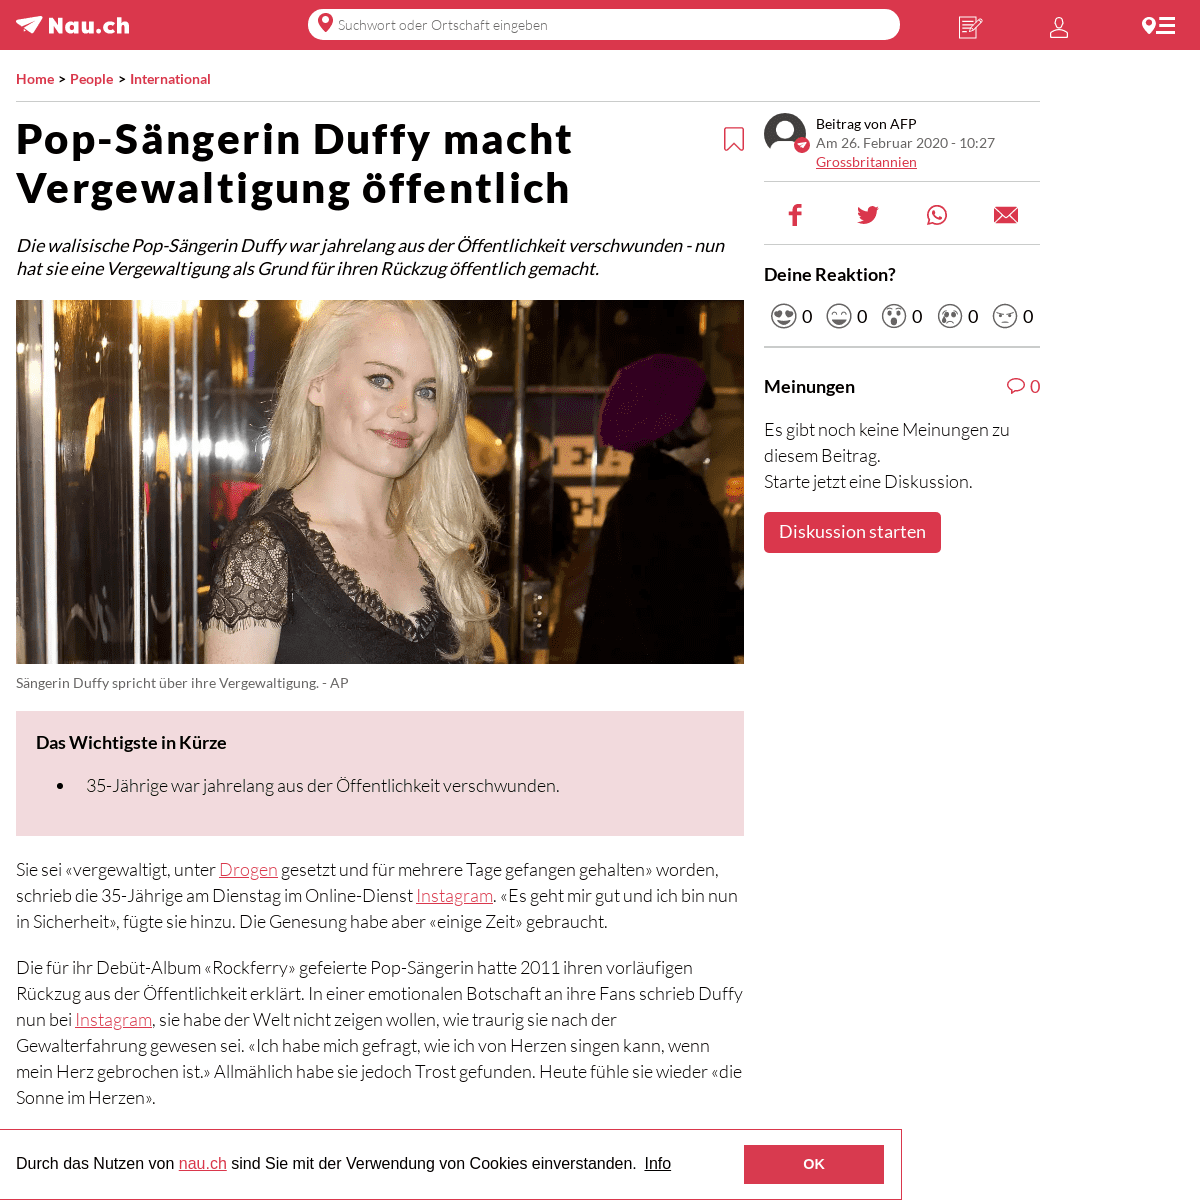 A complete backup of www.nau.ch/people/welt/pop-sangerin-duffy-macht-vergewaltigung-offentlich-65668645